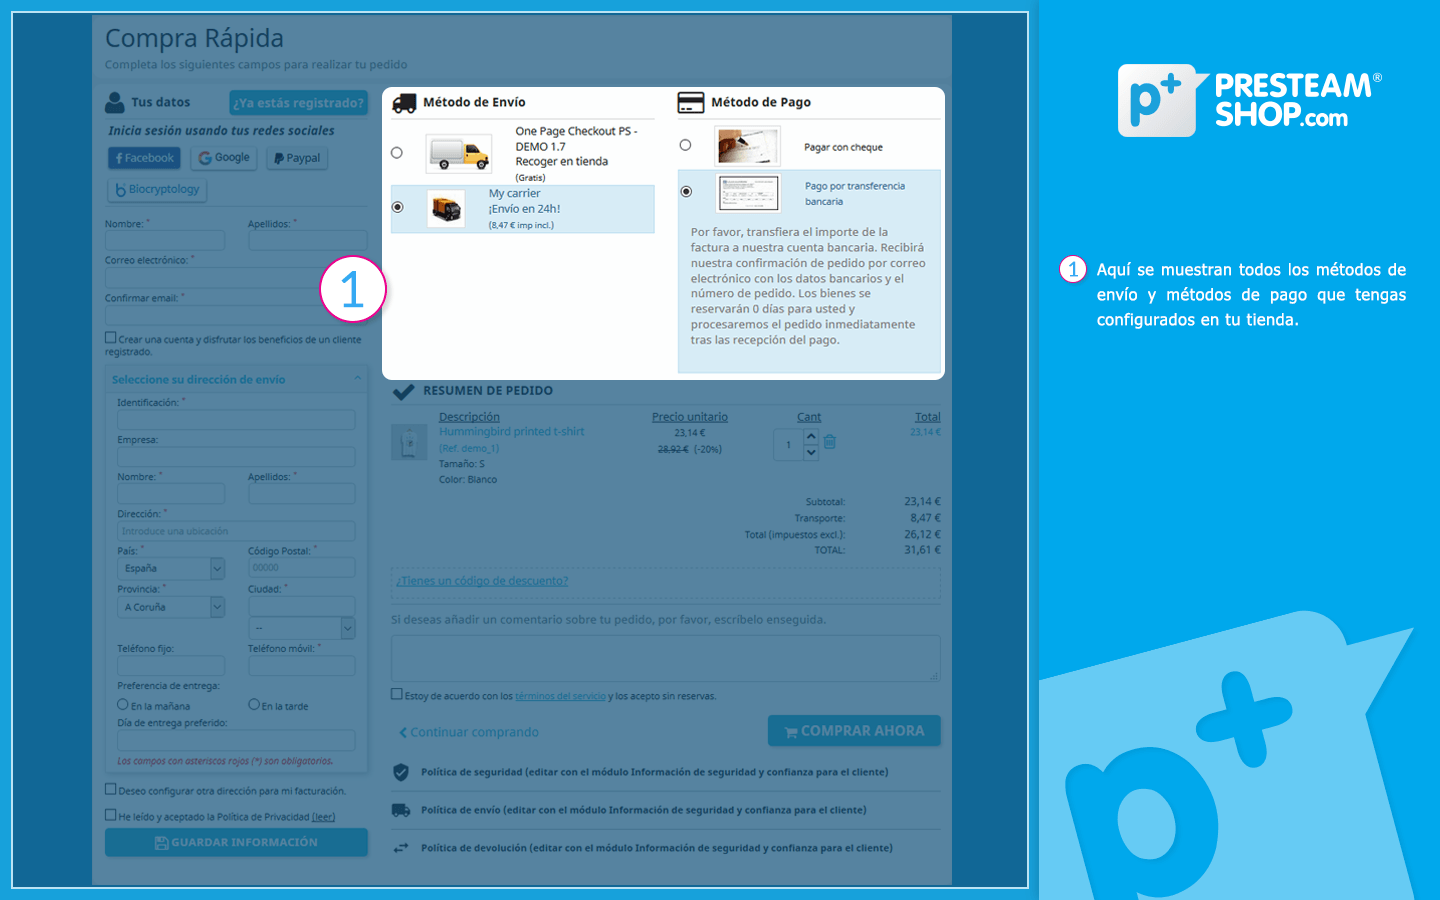 One Page Checkout PS - Proceso de compra mejorado